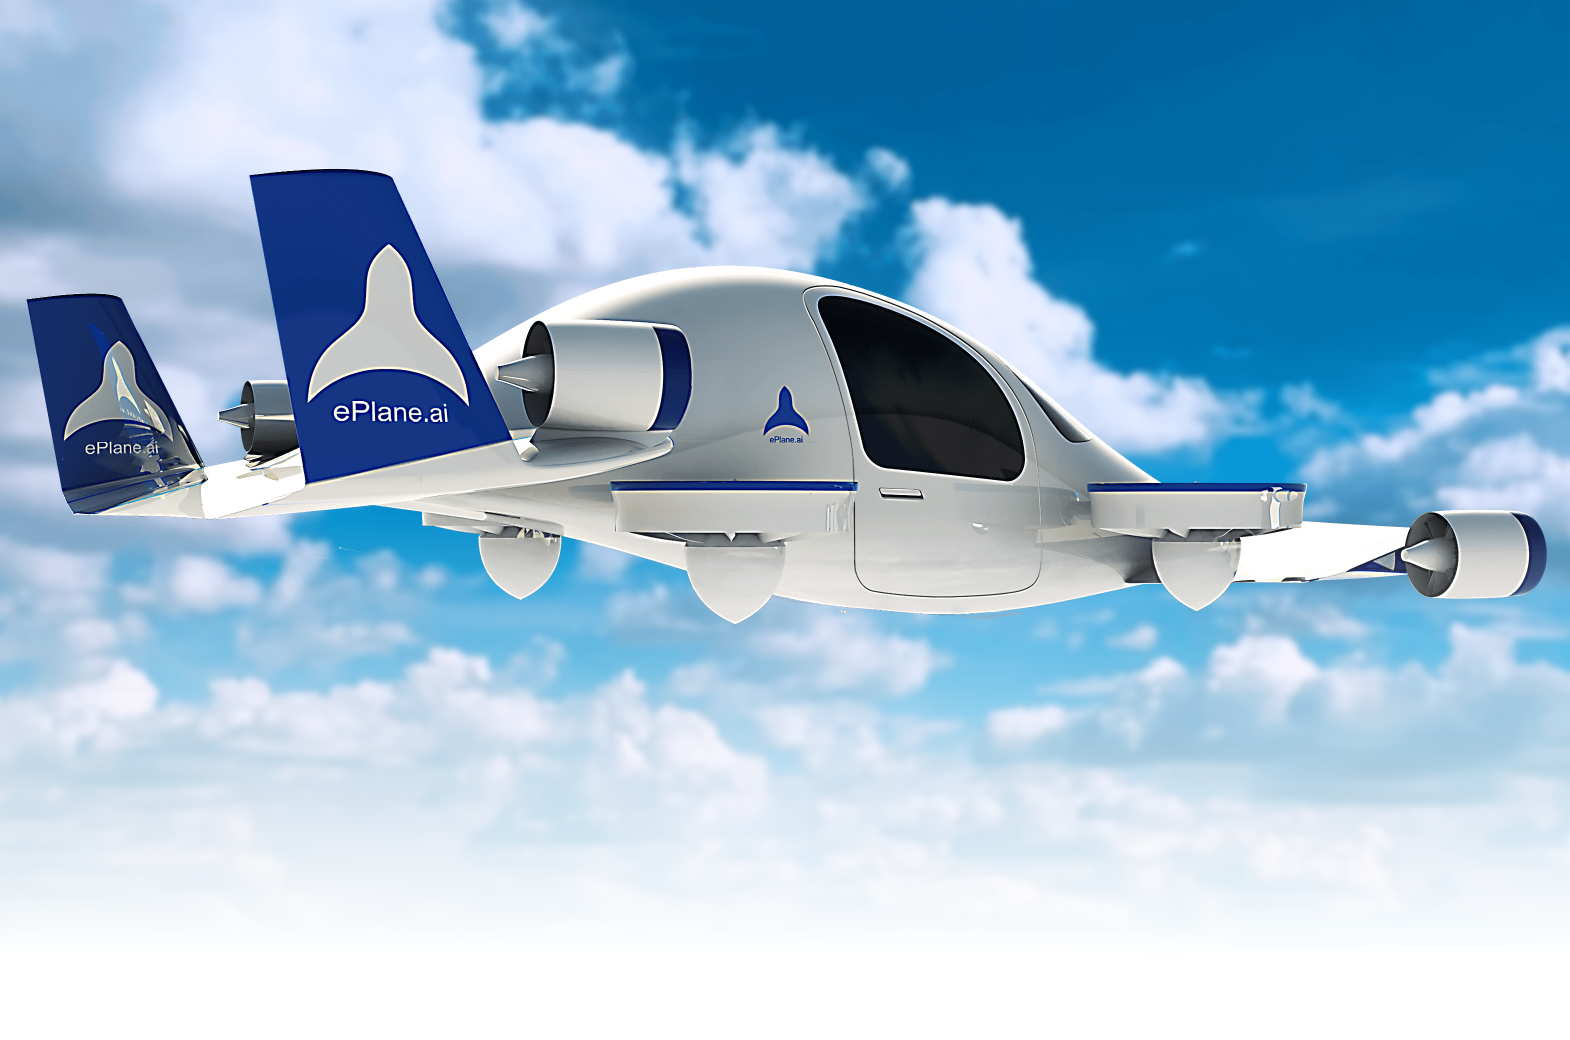 Grundlæggeren af ePlane sagde, at virksomheden planlægger at frigive den første prototype af lufttaxaen inden udgangen af 2024 og lancere fuldskala-kommercialisering i Indien i 2027.